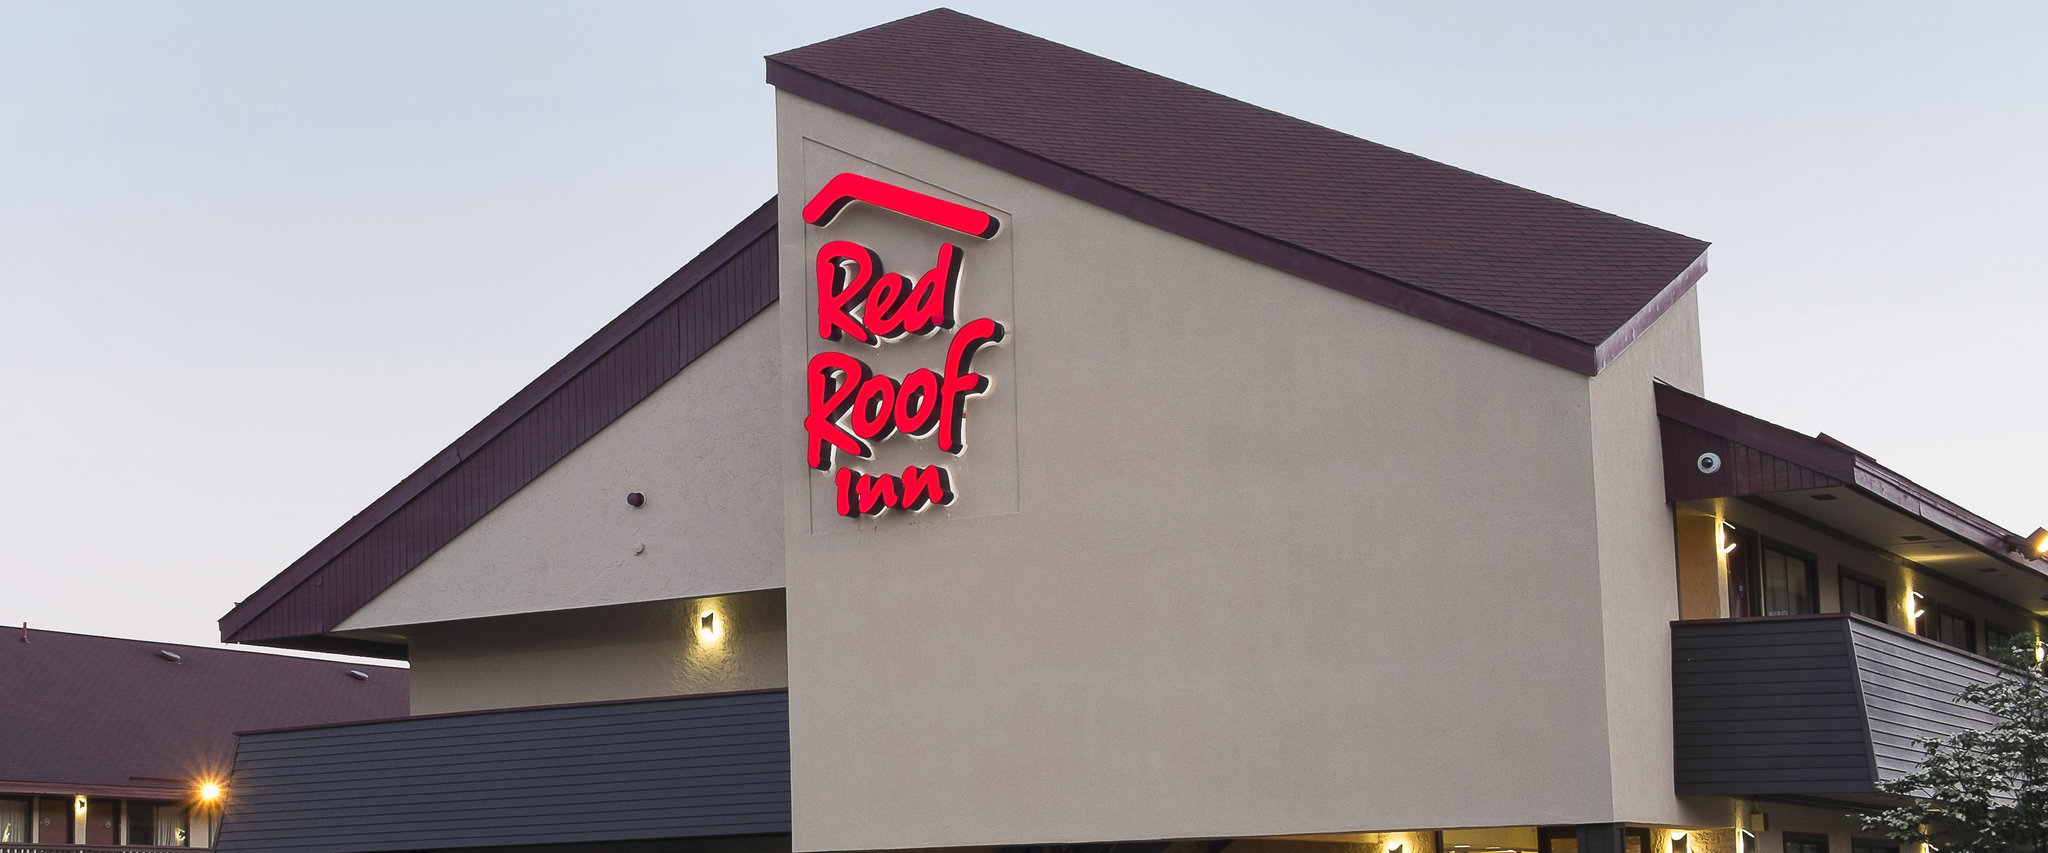 Photo of Red Roof Inn Boston - Framingham, Framingham, MA